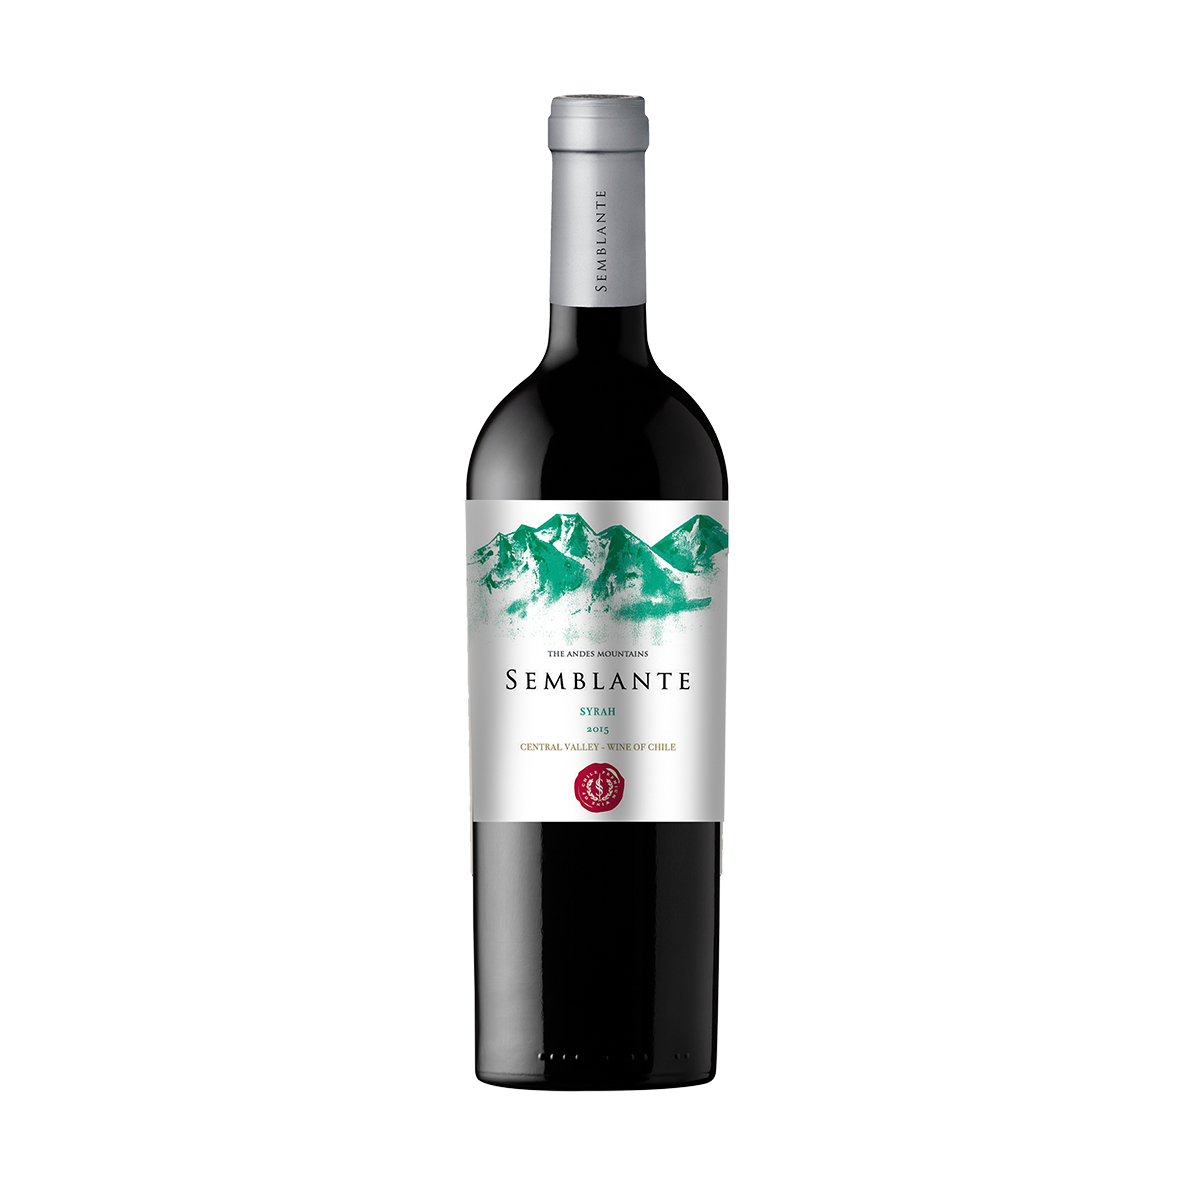 智利中央山谷西格尔酒庄风彩系列西拉干红葡萄酒